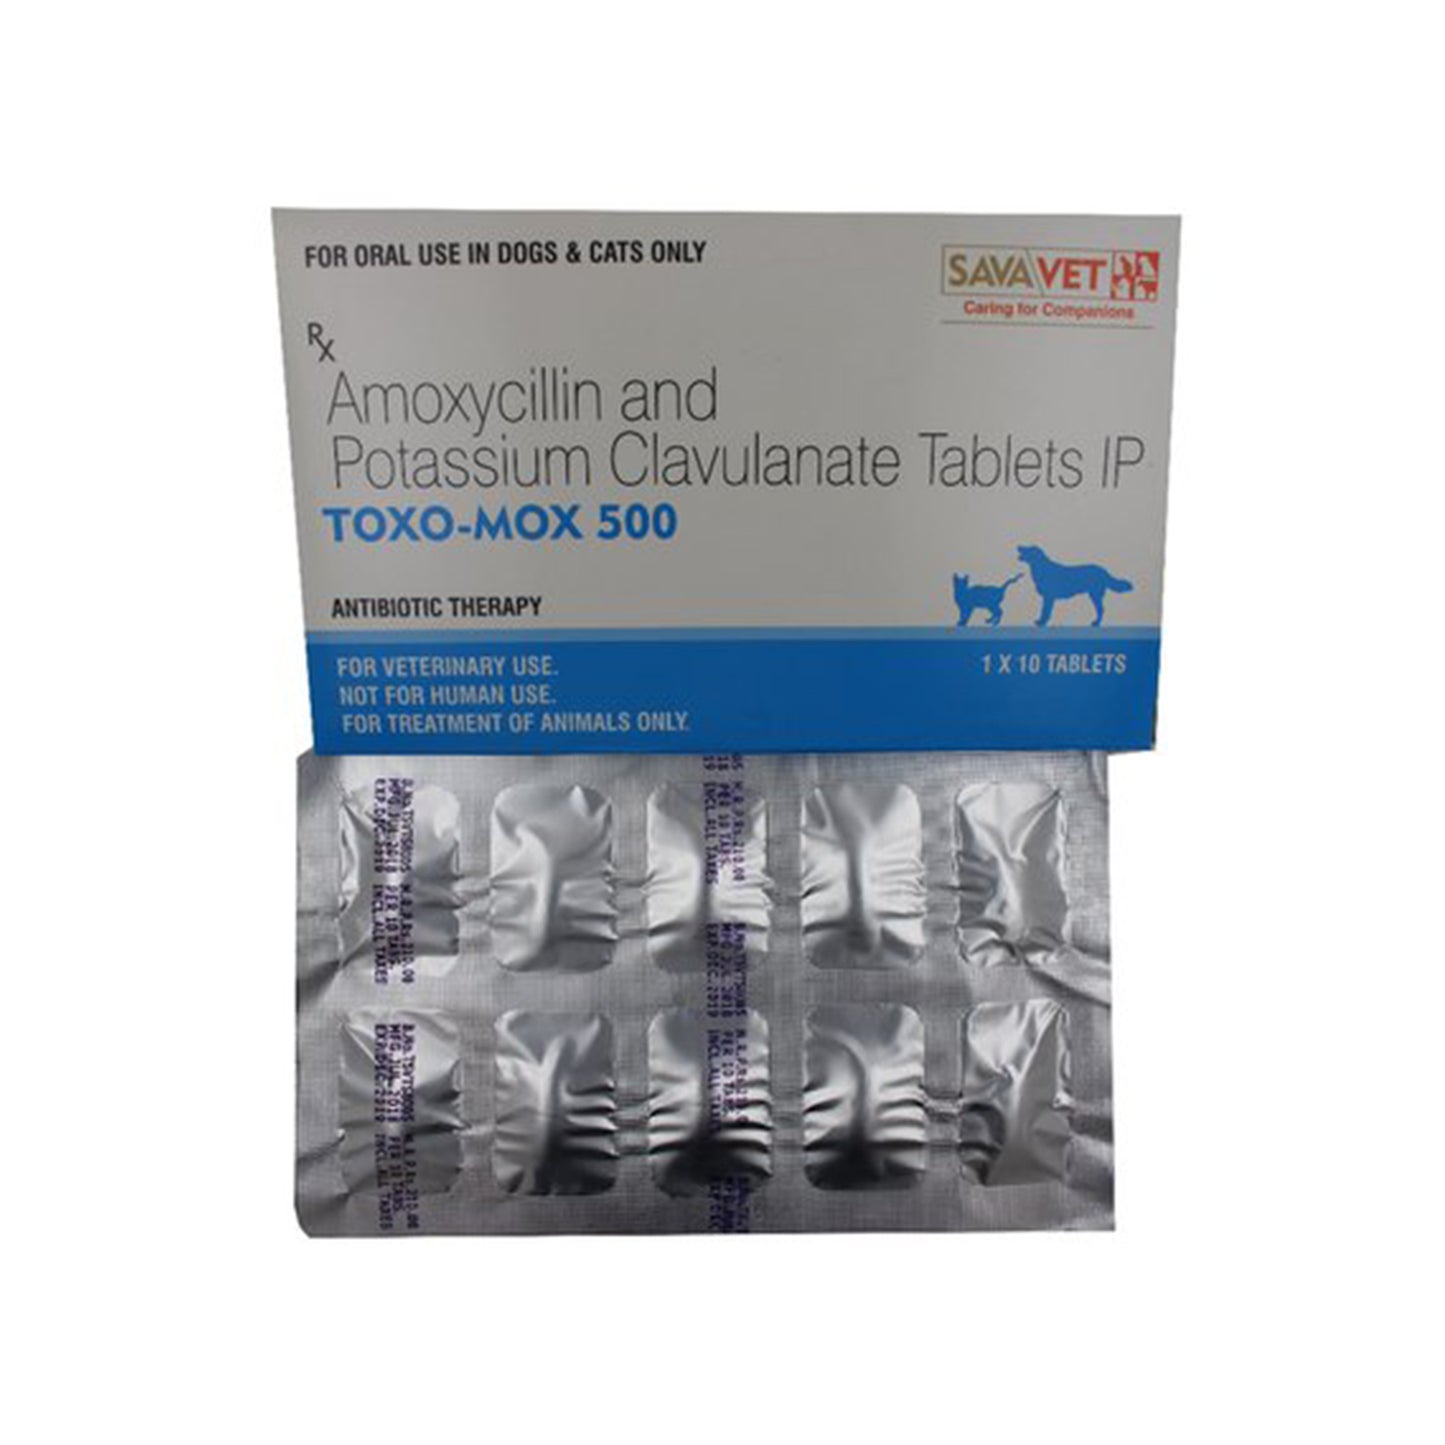 Savavet - Toxomox 500 tablets